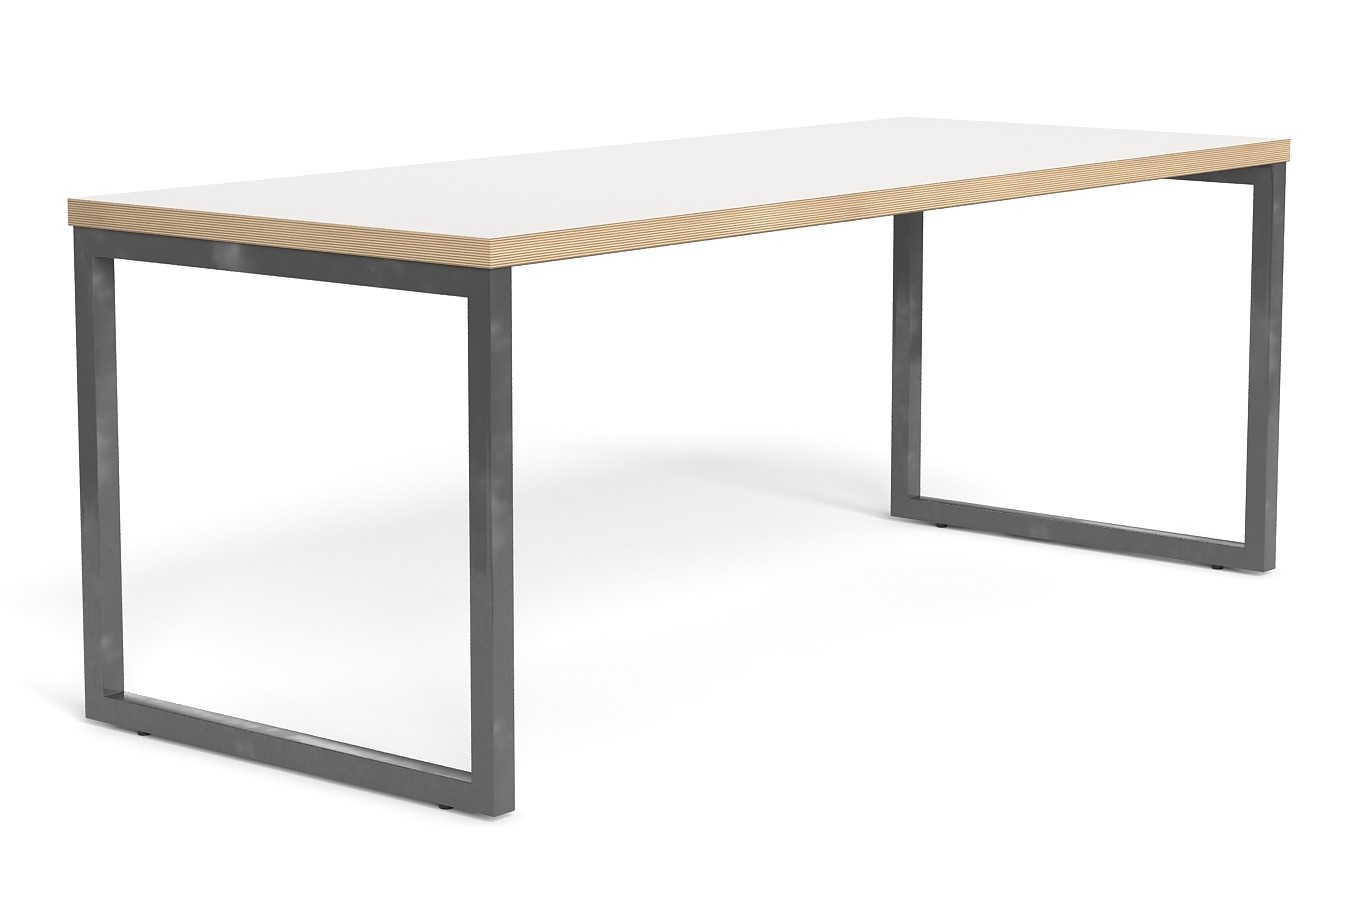 WS - Mix table - White, ply edge